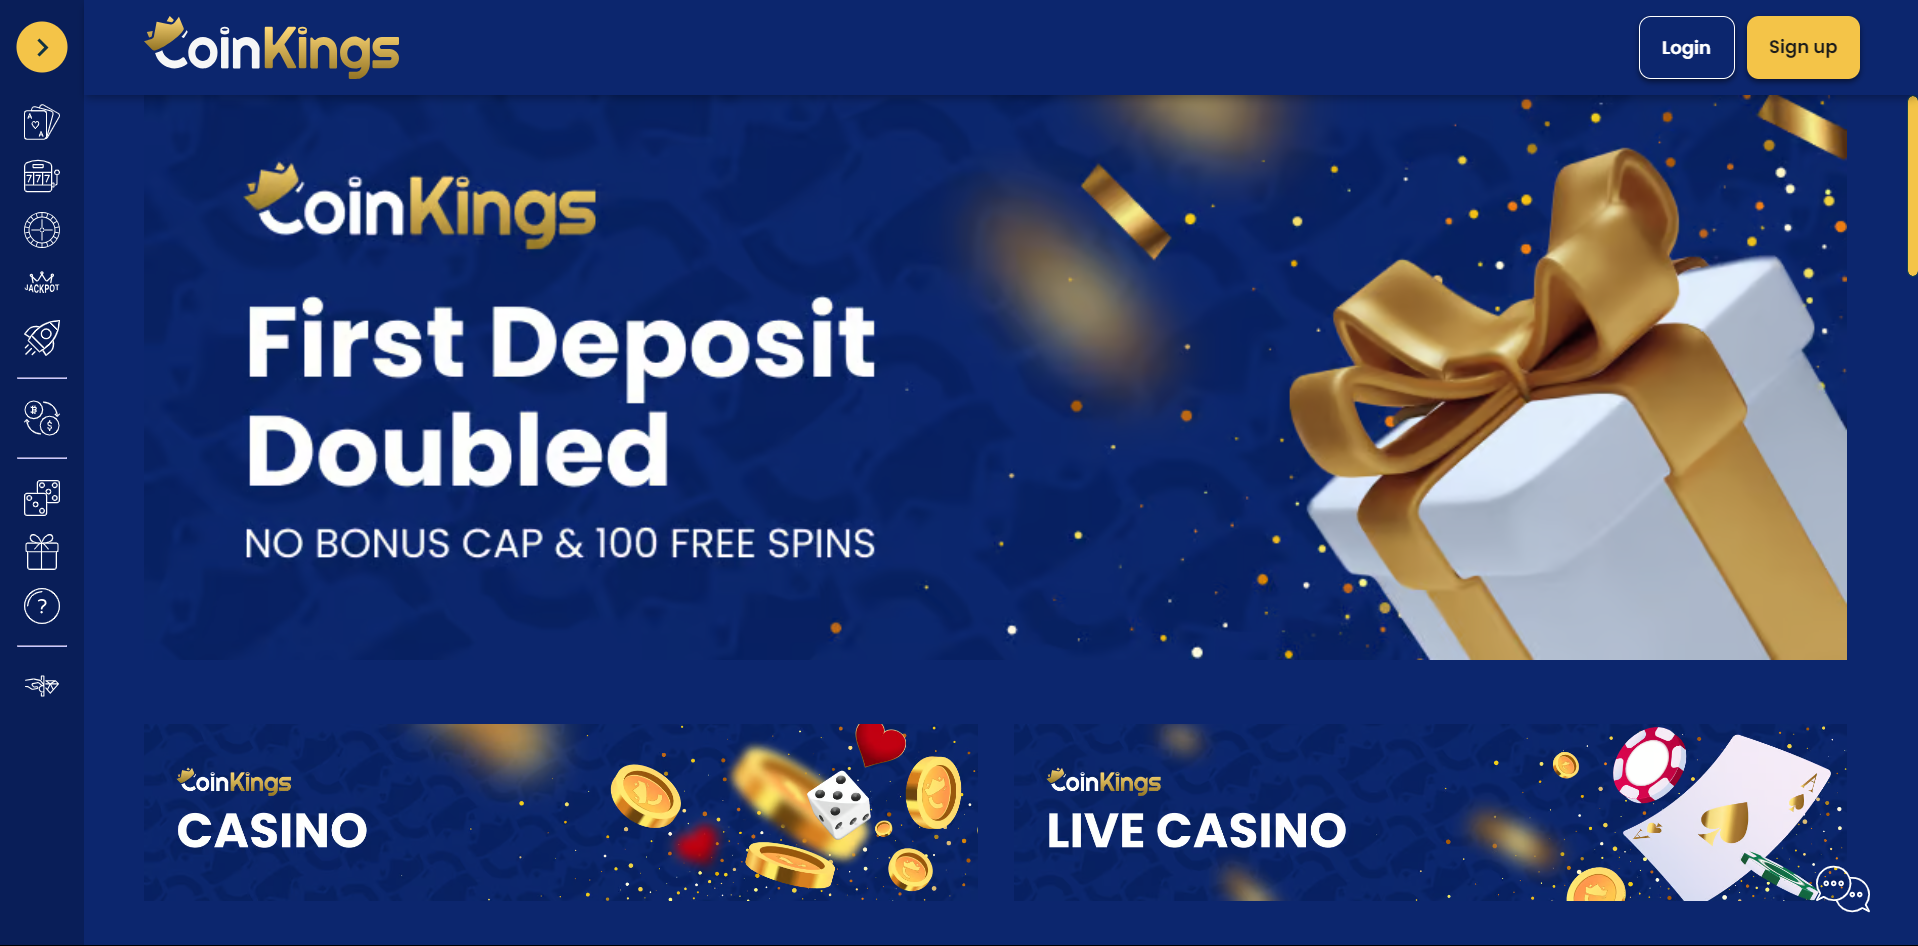 CoinKings Casino Lobby